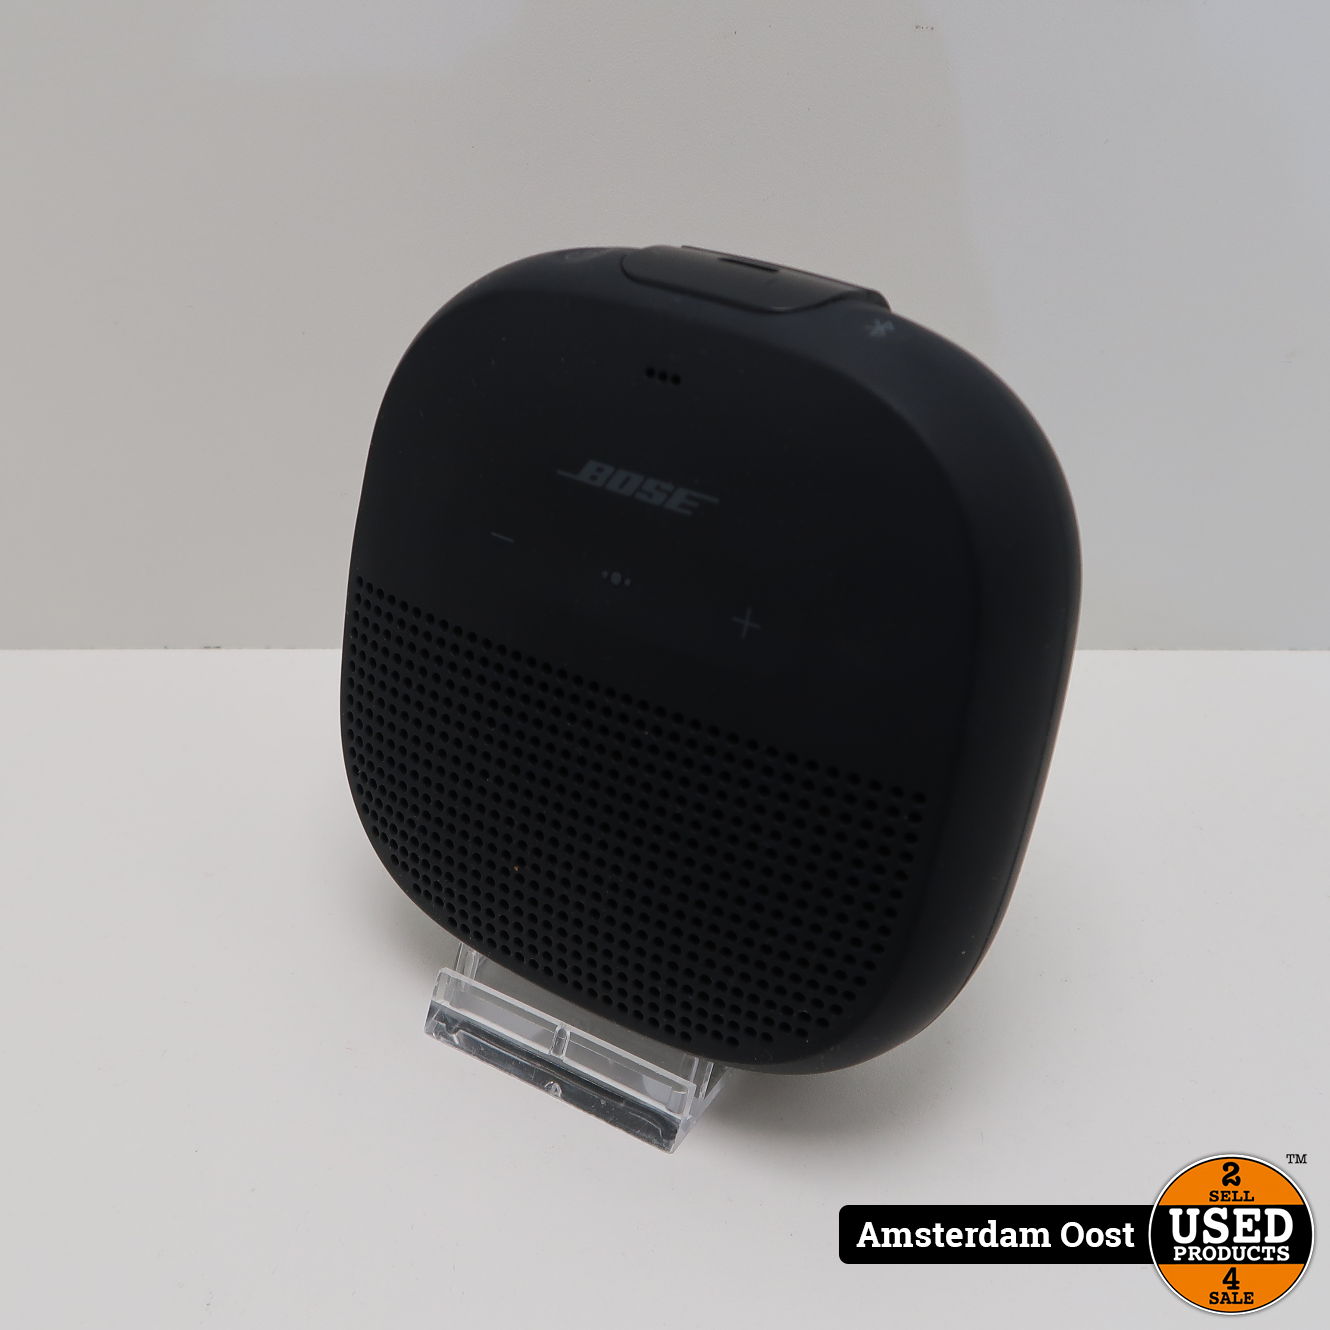 ik ben slaperig Bereid landbouw Bose SoundLink Micro Black Bluetooth Speaker | Prima Staat - Used Products  Amsterdam Oost